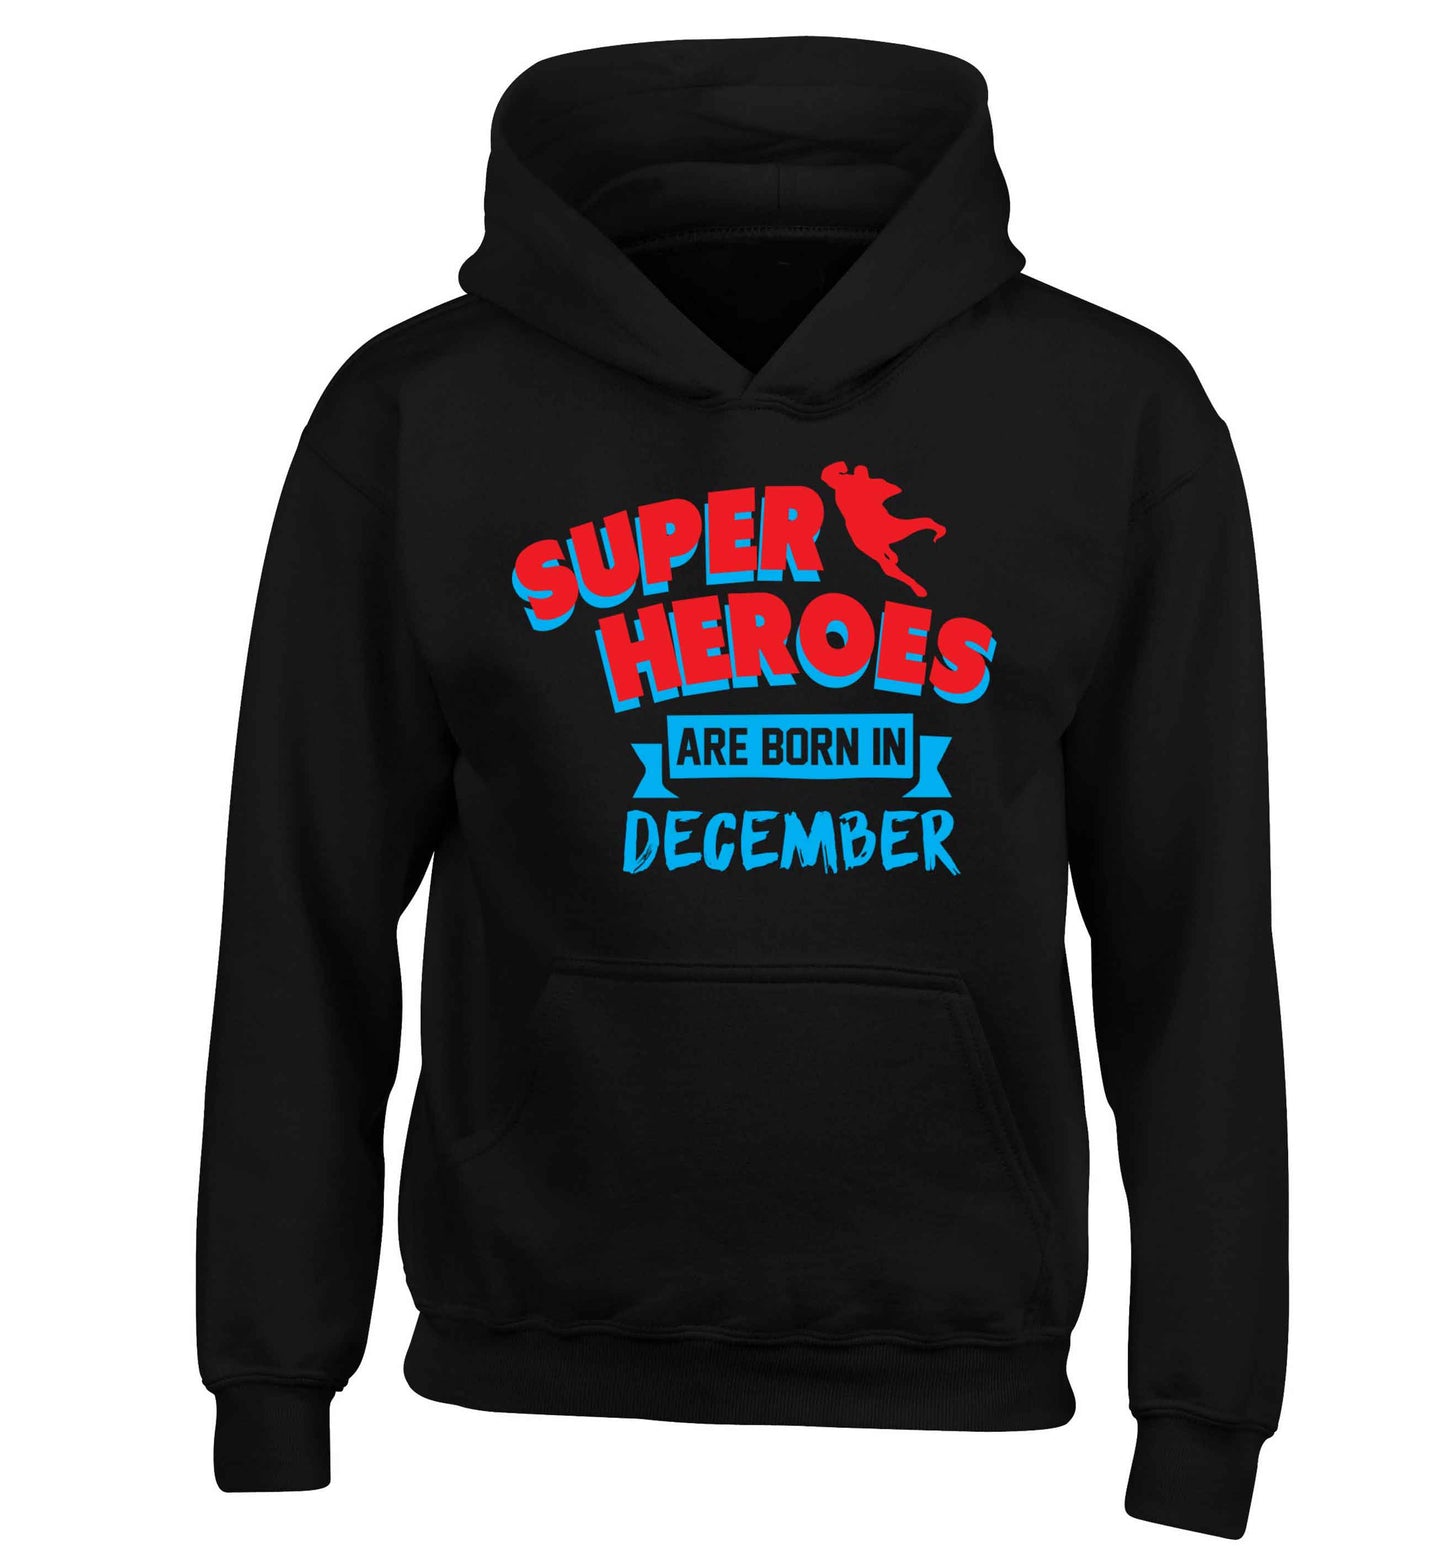 Superheroes are born in December children's black hoodie 12-13 Years